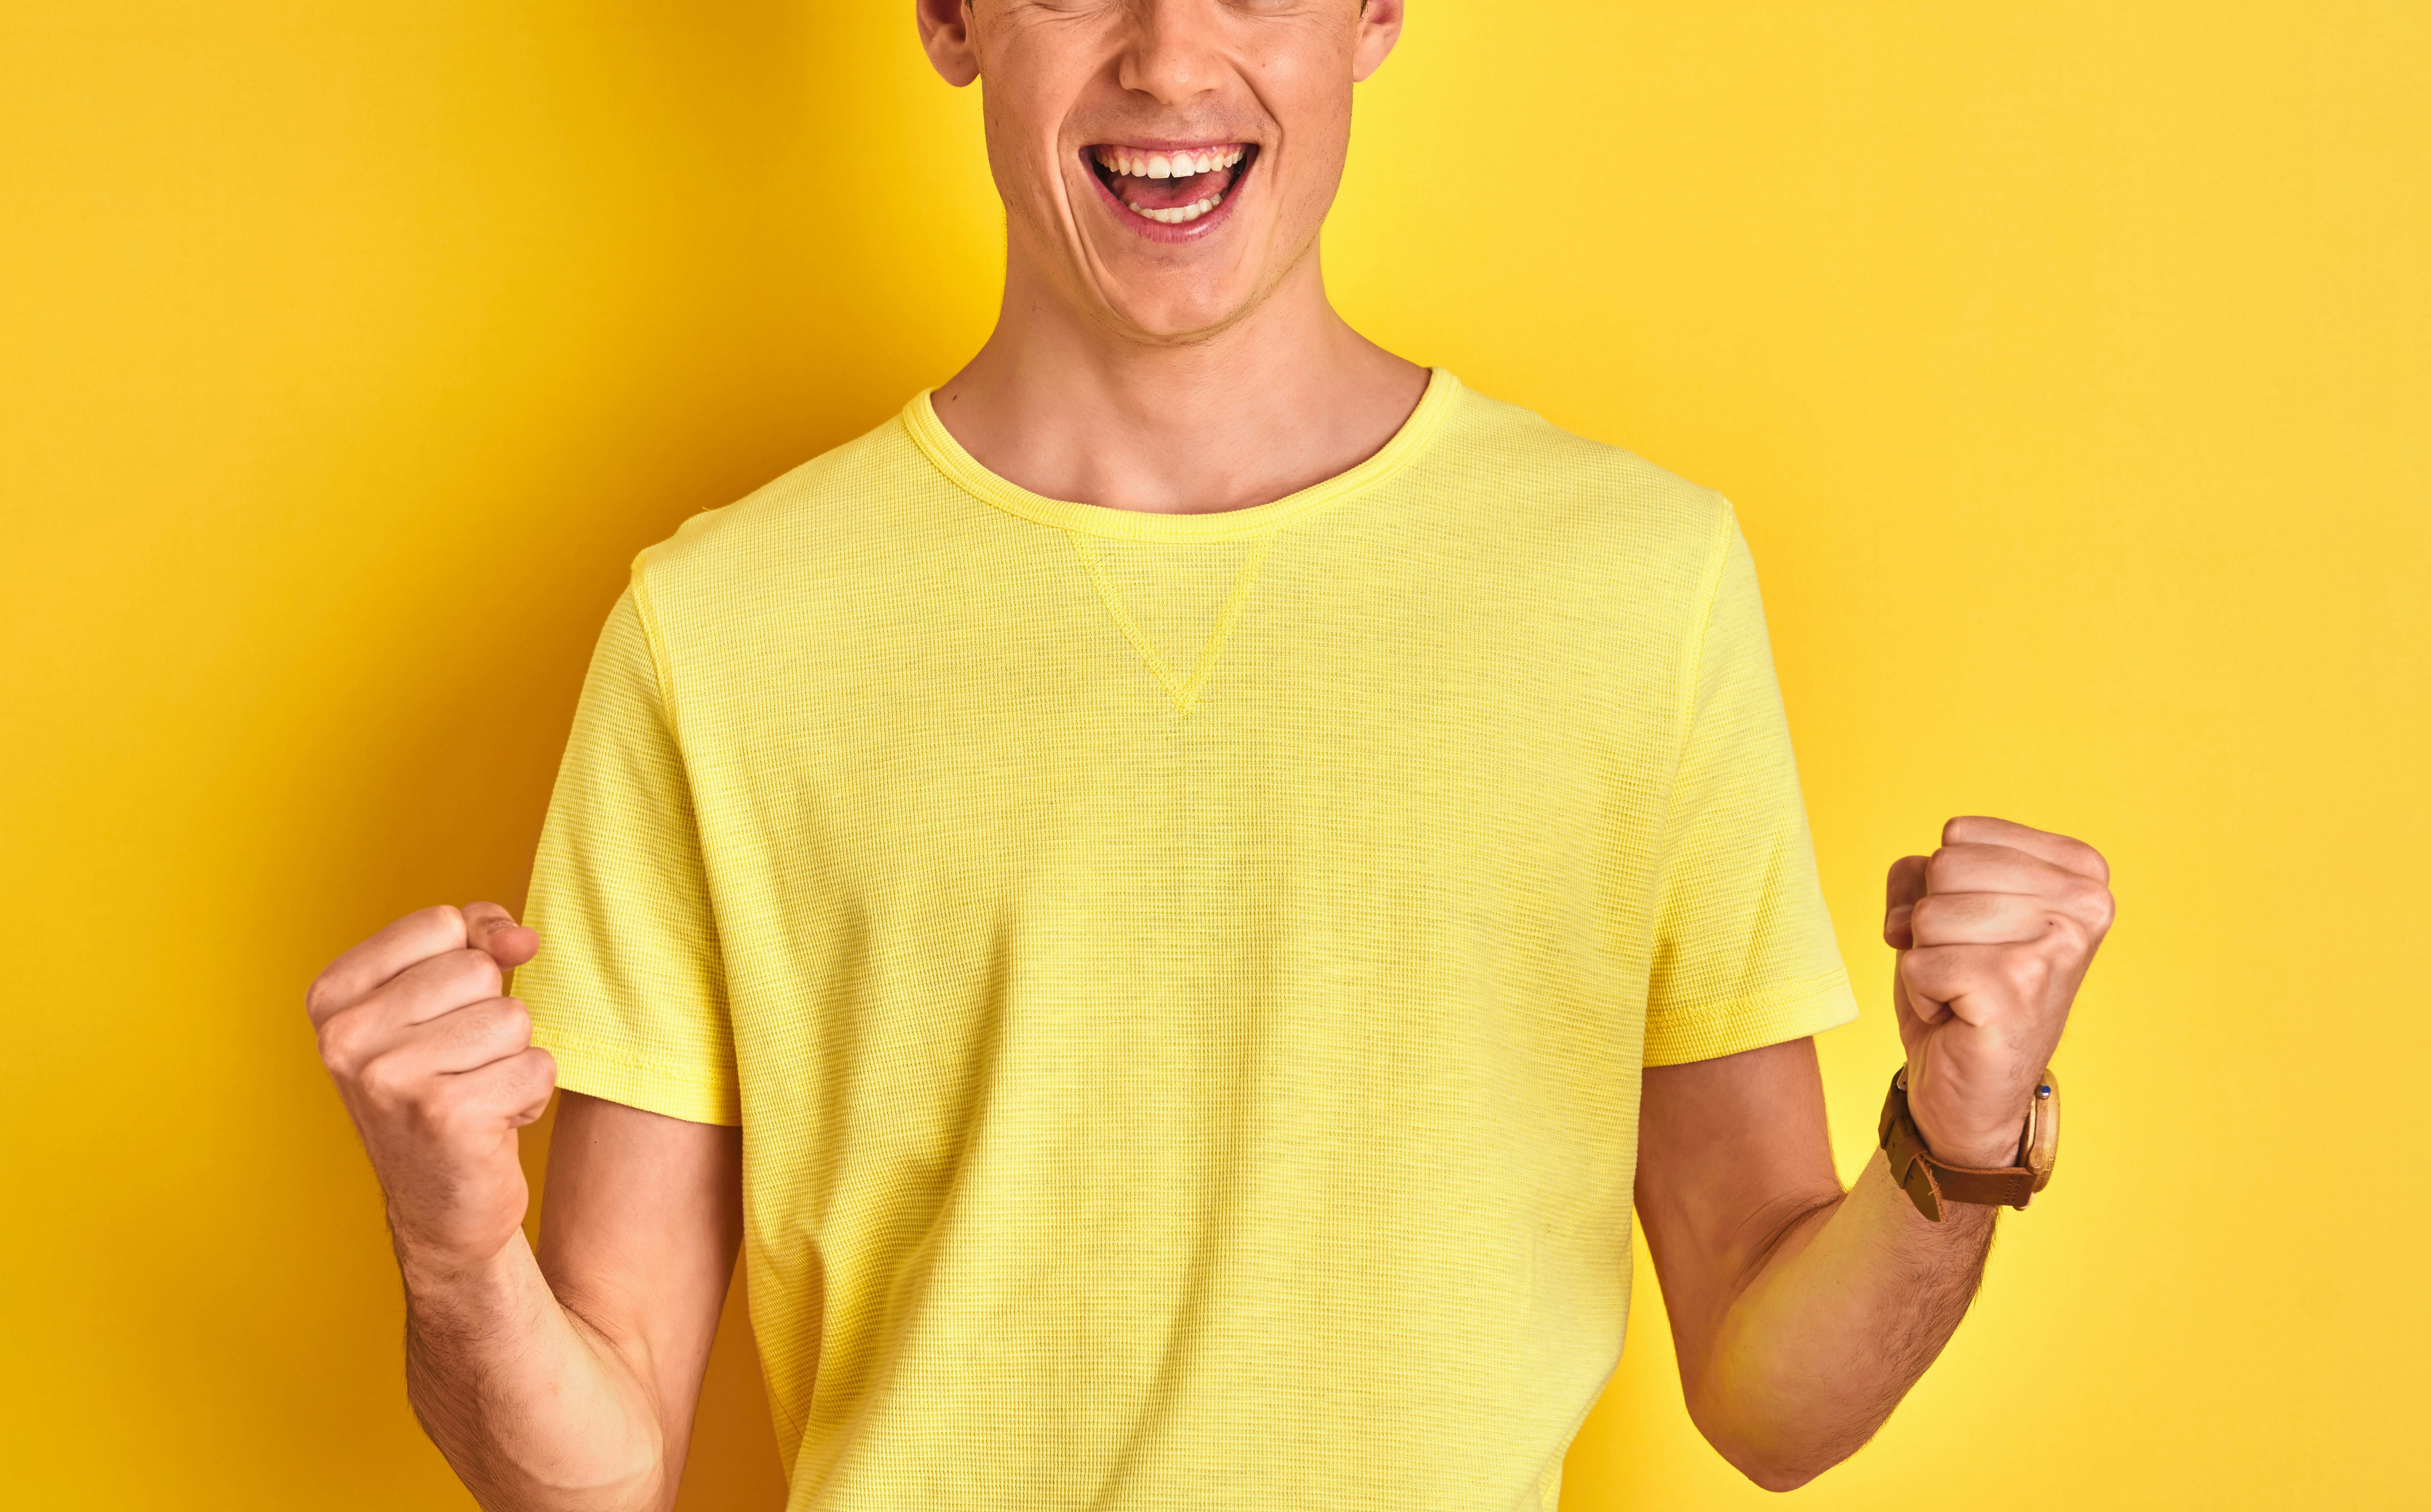 Mann i gul t-skjorte foran gul bakgrunn jubler og knytter hendene.